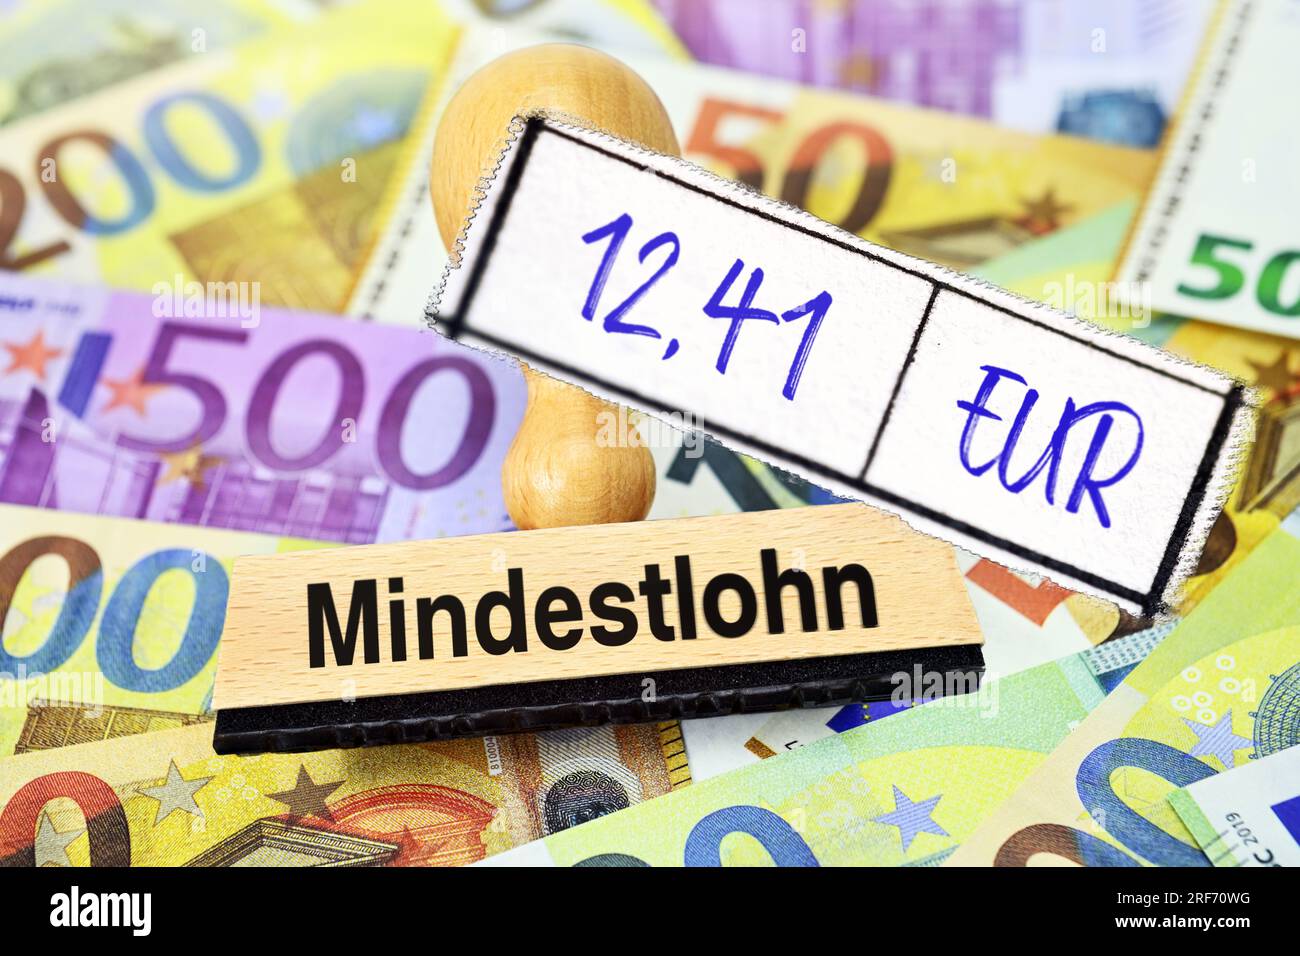 FOTOMONTAGE, Stempel mit Aufschrift Mindestlohn und Zettel mit Aufschrift 12,41 EUR auf Geldscheinen Banque D'Images